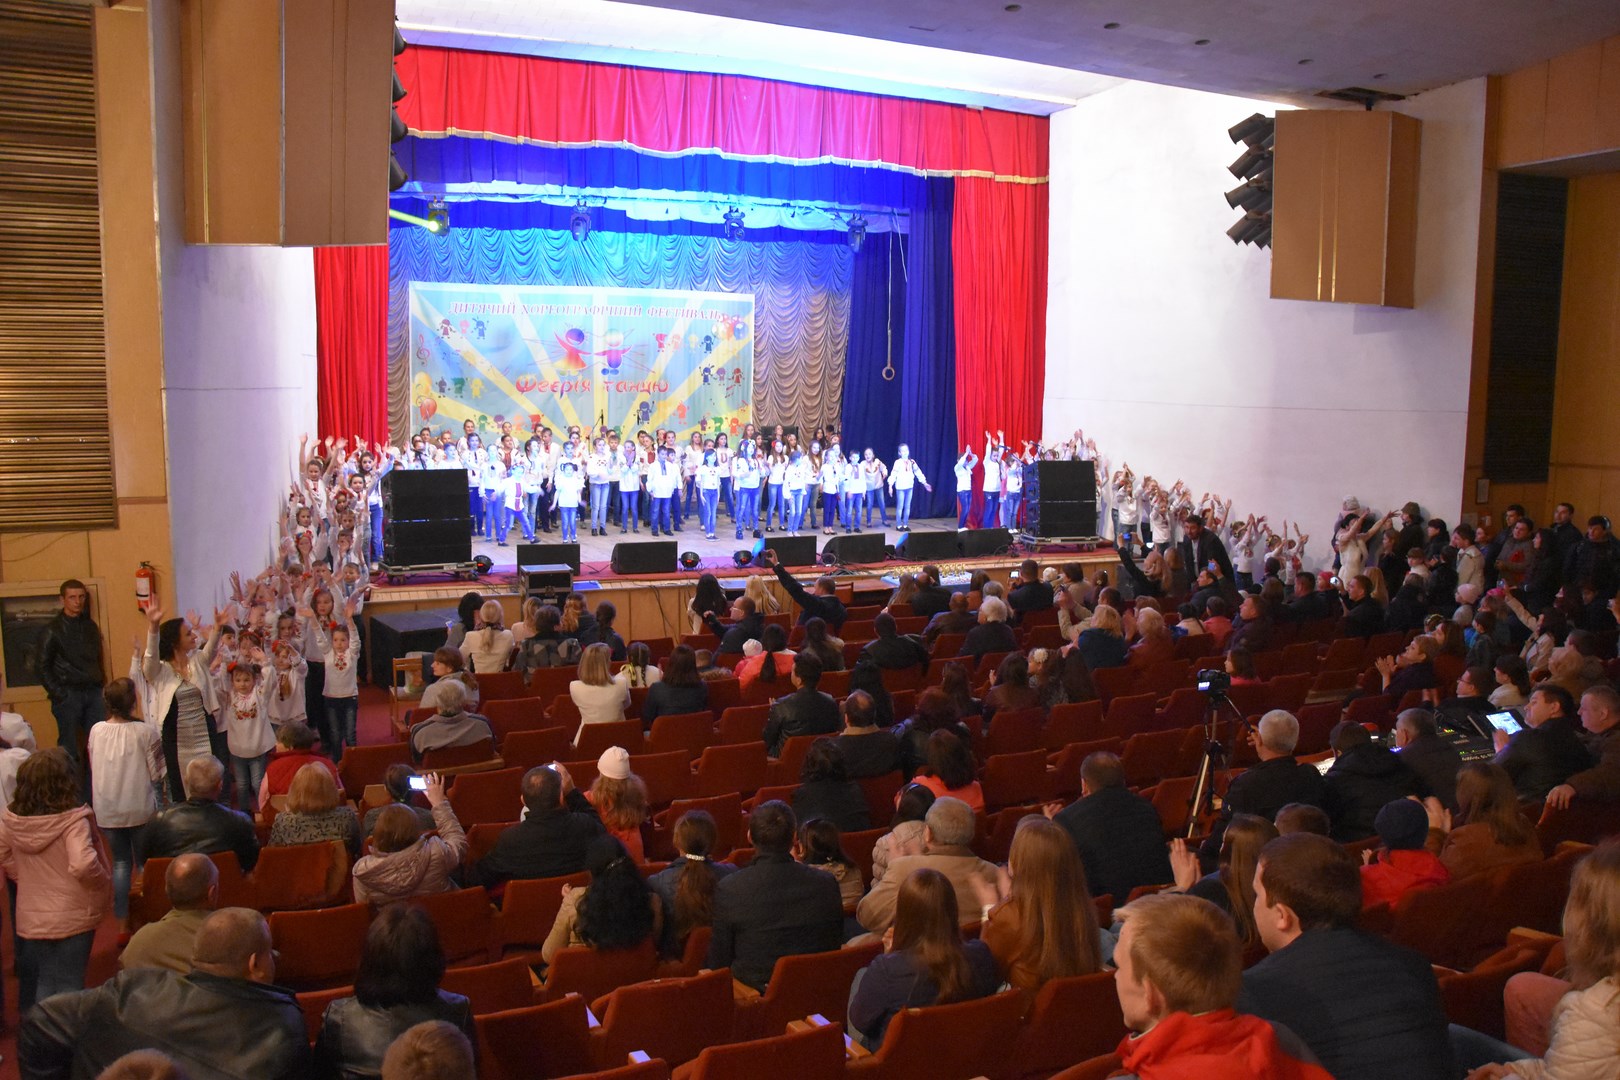 23 апреля в Иршаве прошло одно из самый масштабный действ – районный фестиваль по хореографии «Феерия танца».
